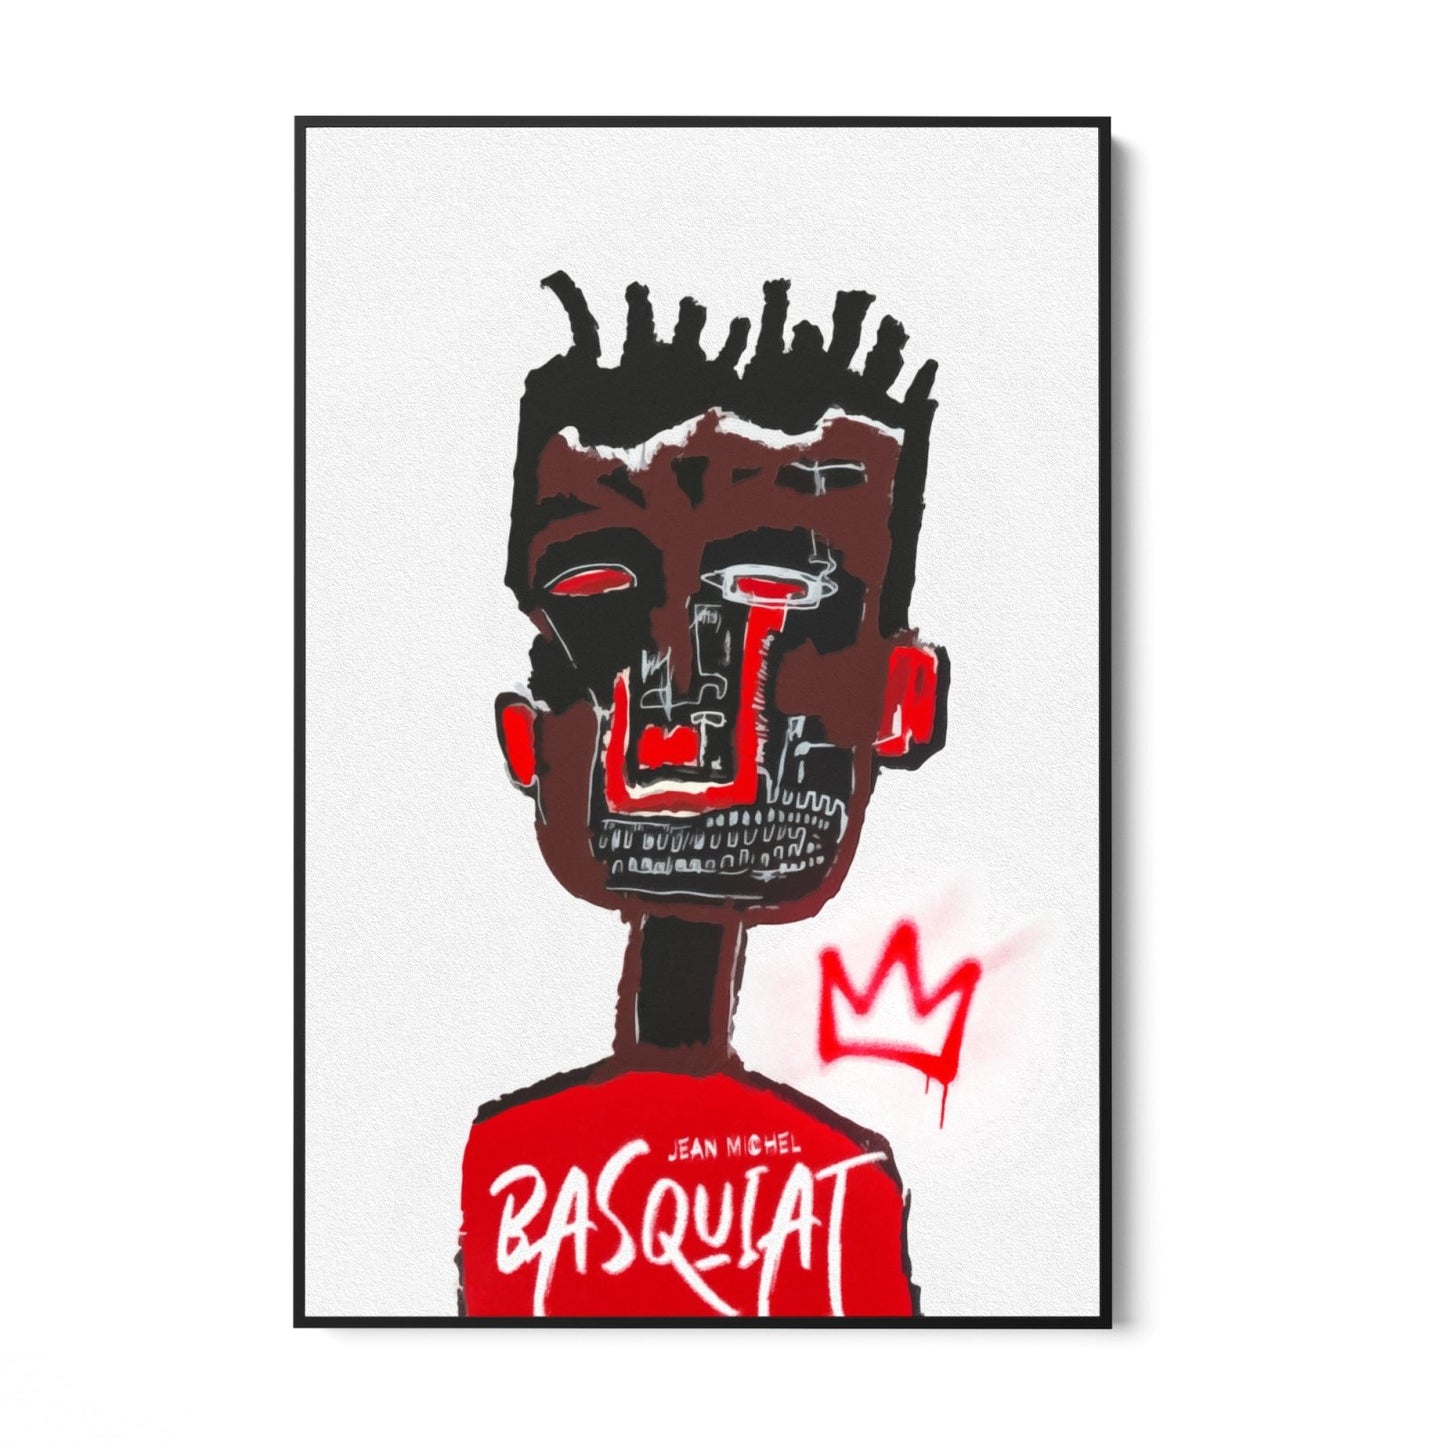 Basquiat vázlat